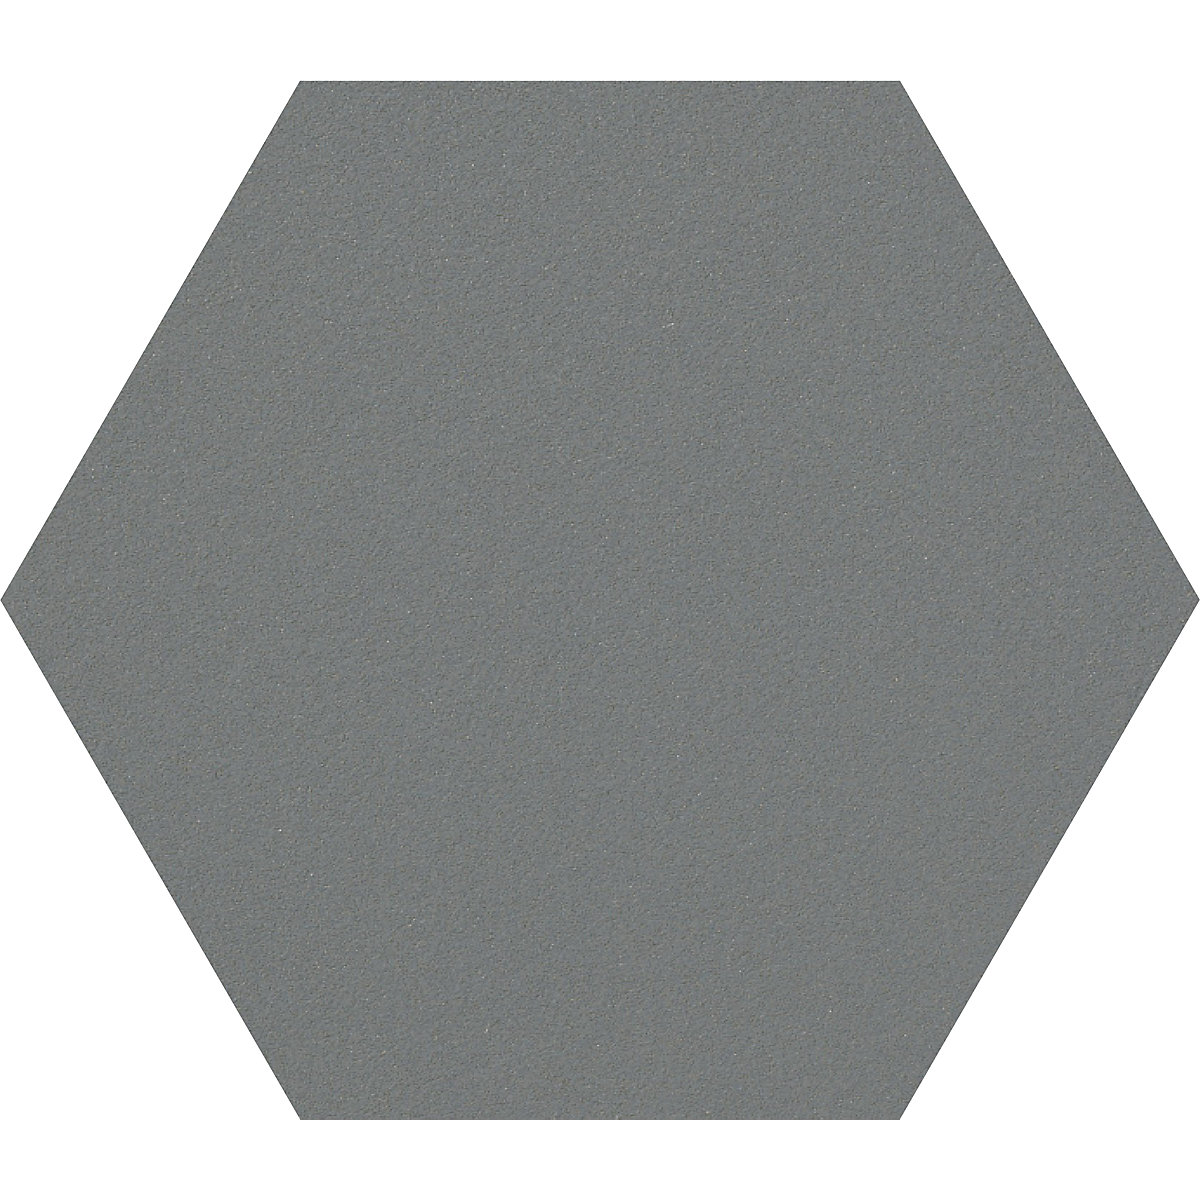 Tablón hexagonal de diseño para chinchetas – Chameleon, corcho, A x H 600 x 600 mm, gris oscuro-31